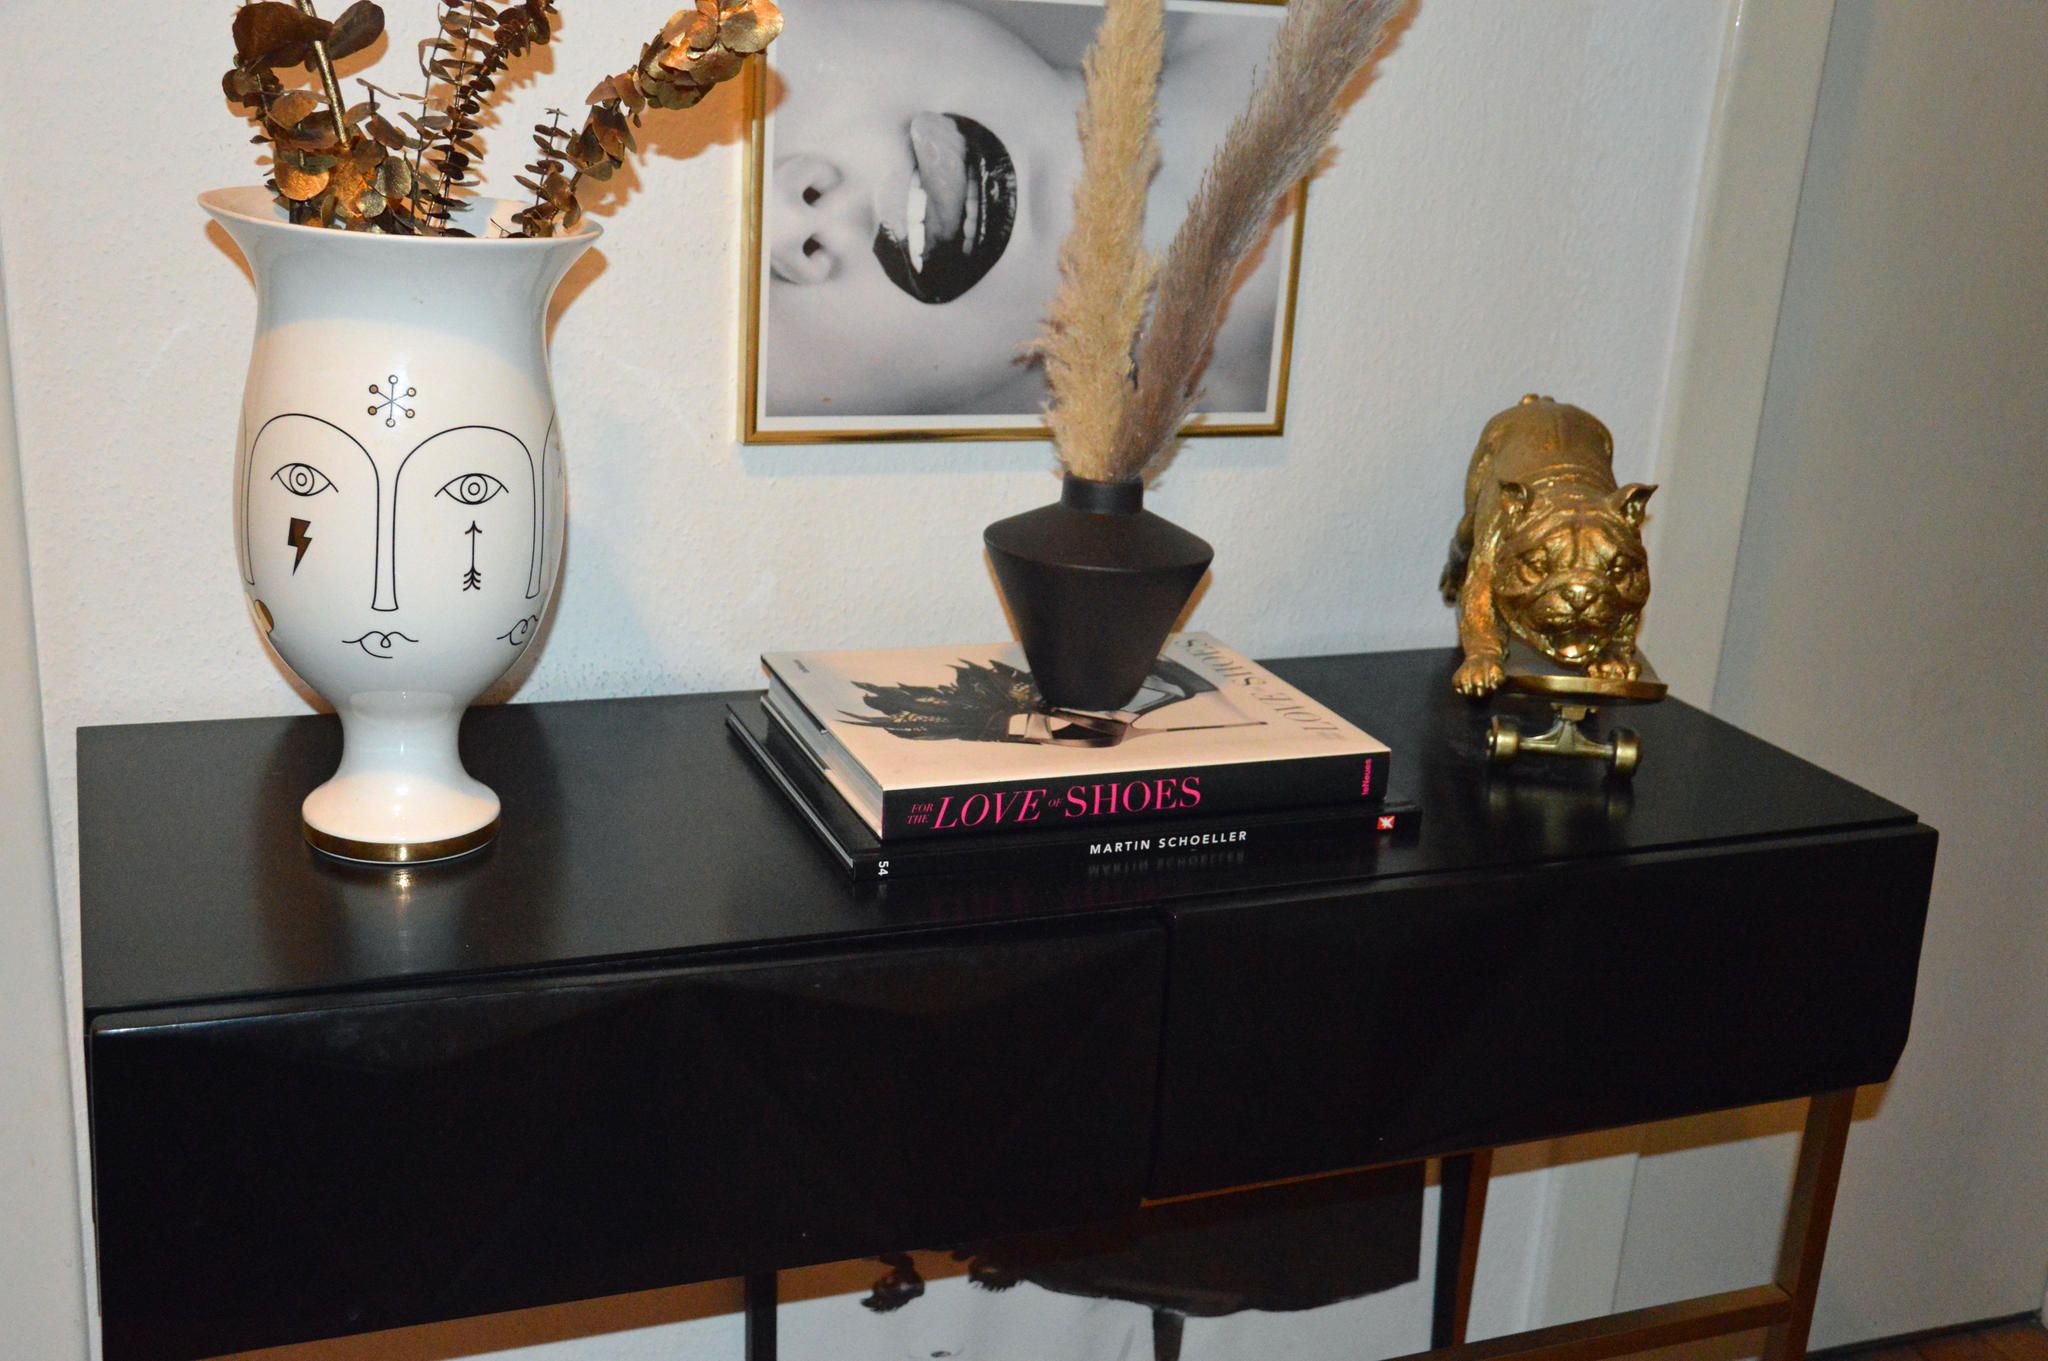 Coffee Table Book: Dekorative Bücher für die Wohnung